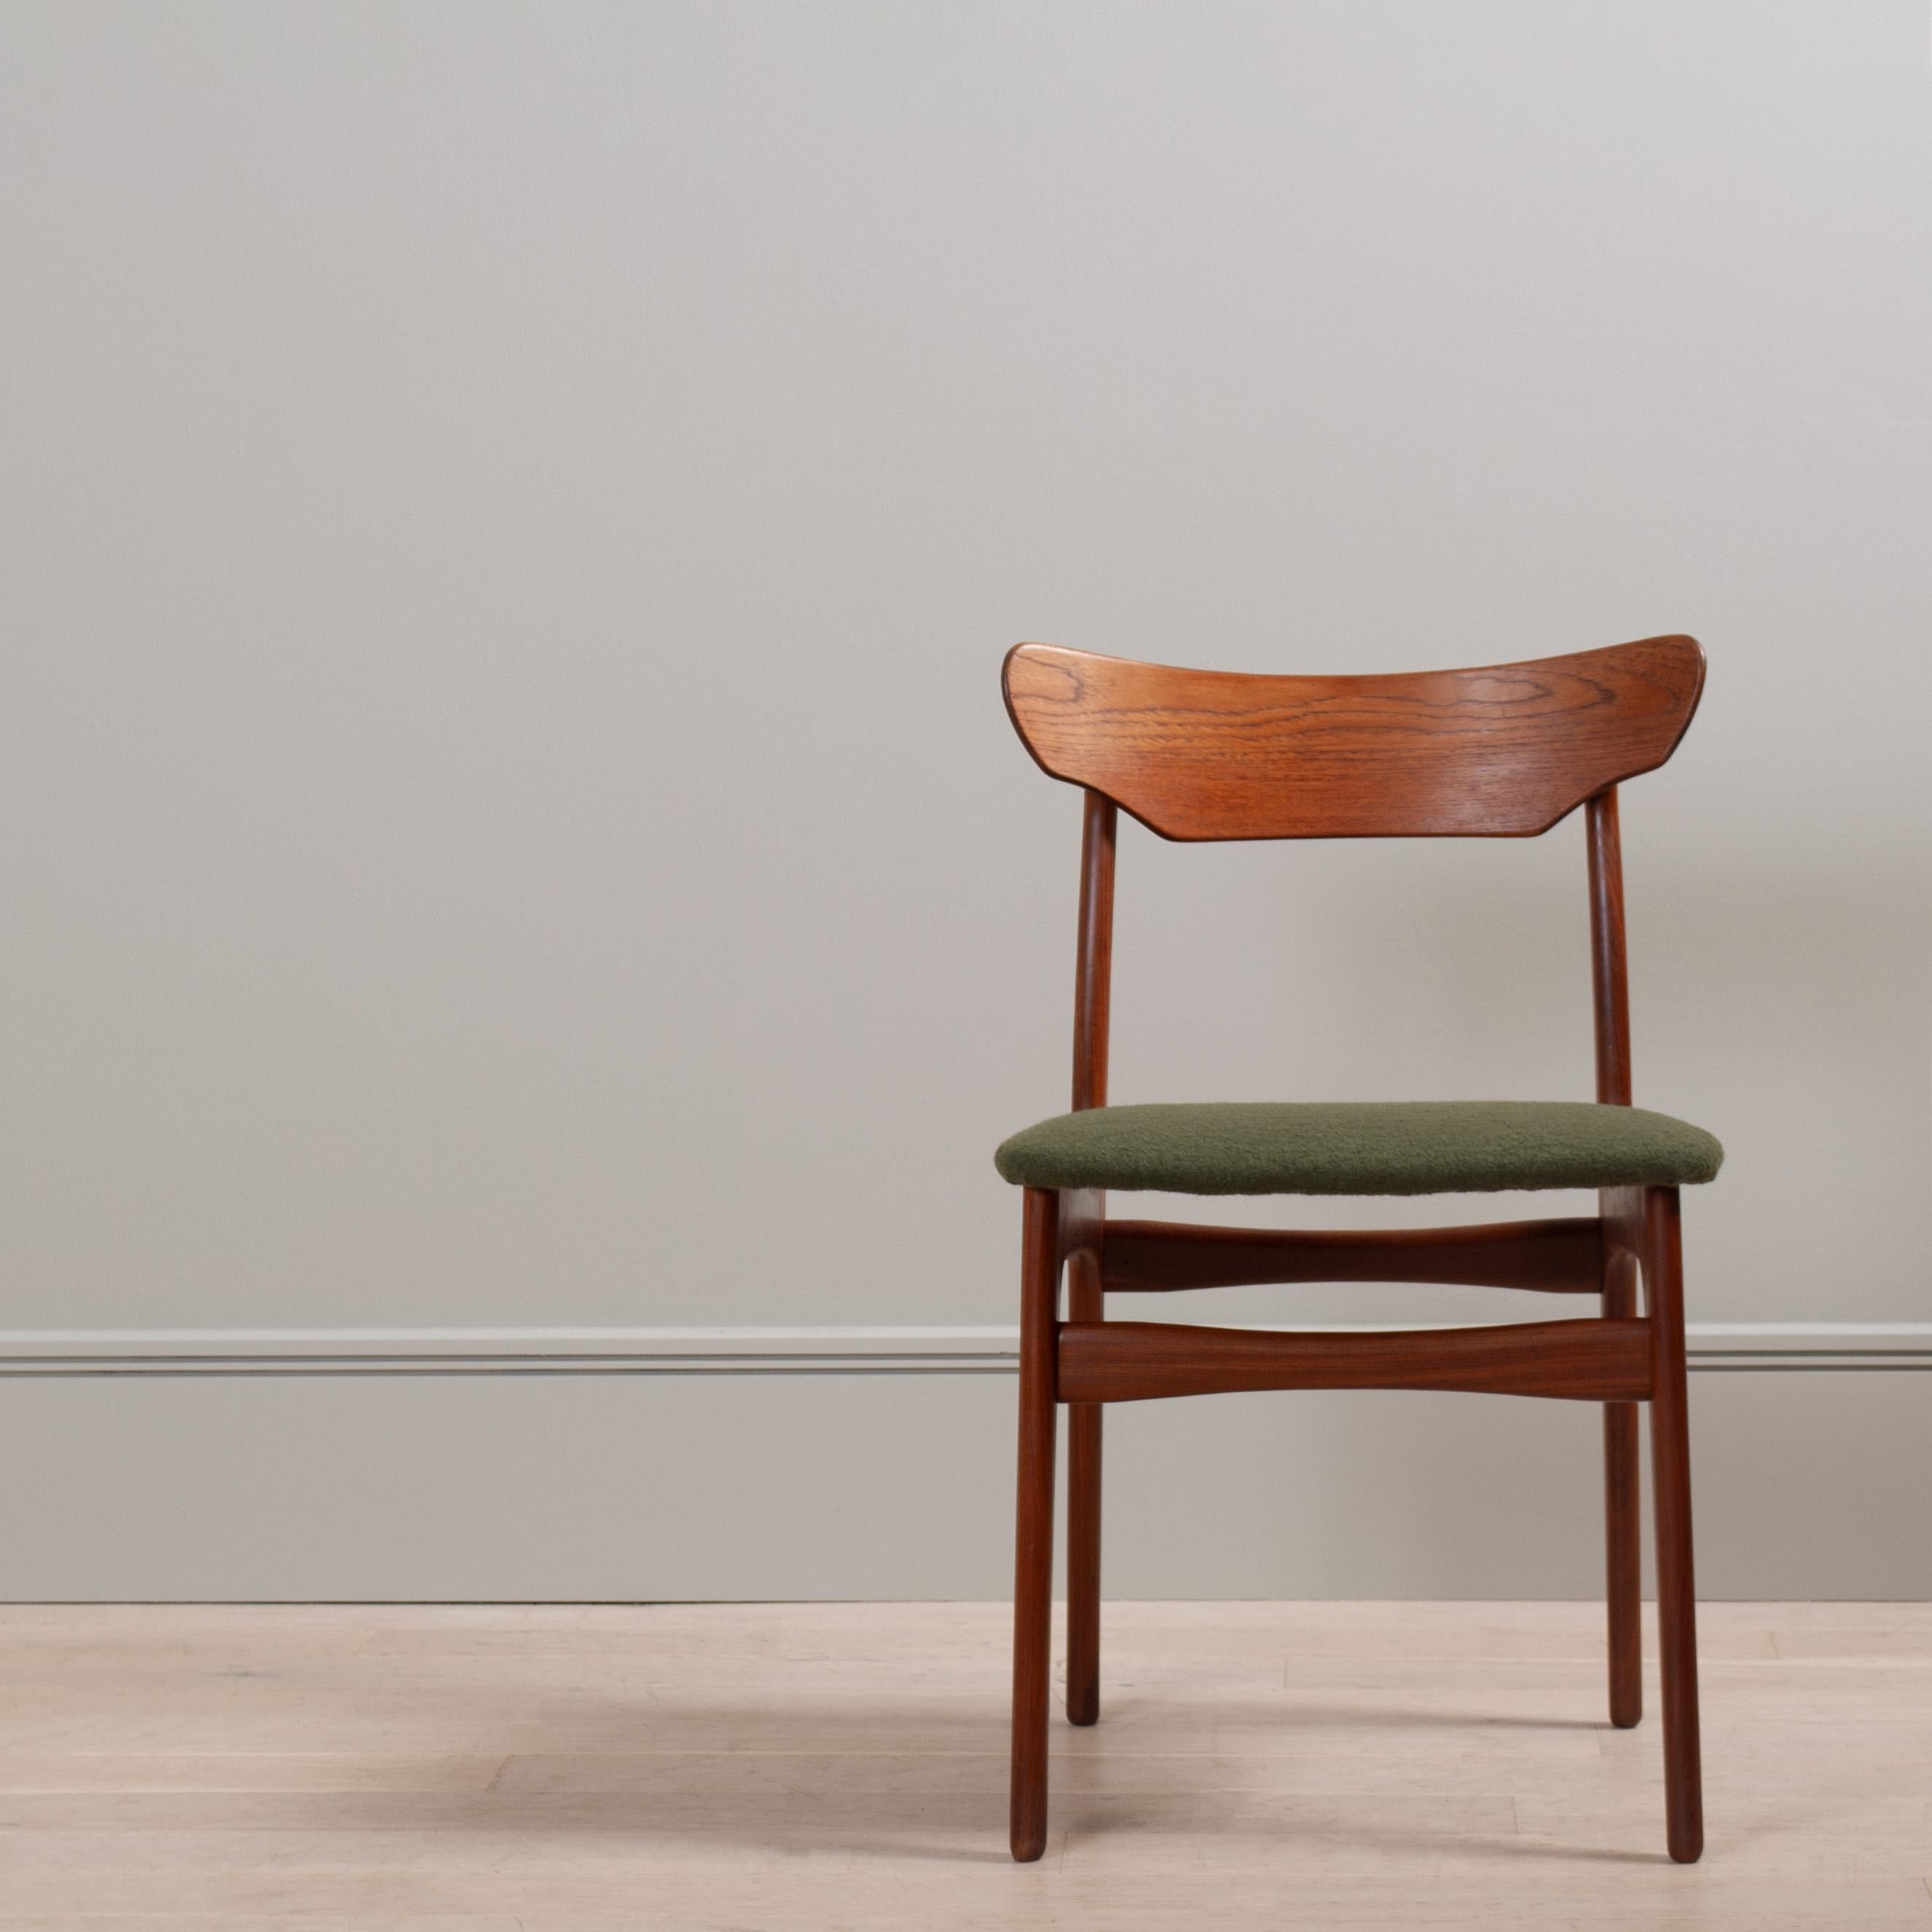 Un ensemble de 4 chaises de salle à manger danoises en teck de très belle facture, conçues par Schionning et Elgaard pour Randers, vers 1960.
En très bon état, avec de nouveaux coussins d'assise recouverts de laine Isle Mill. Superbe design.
Les